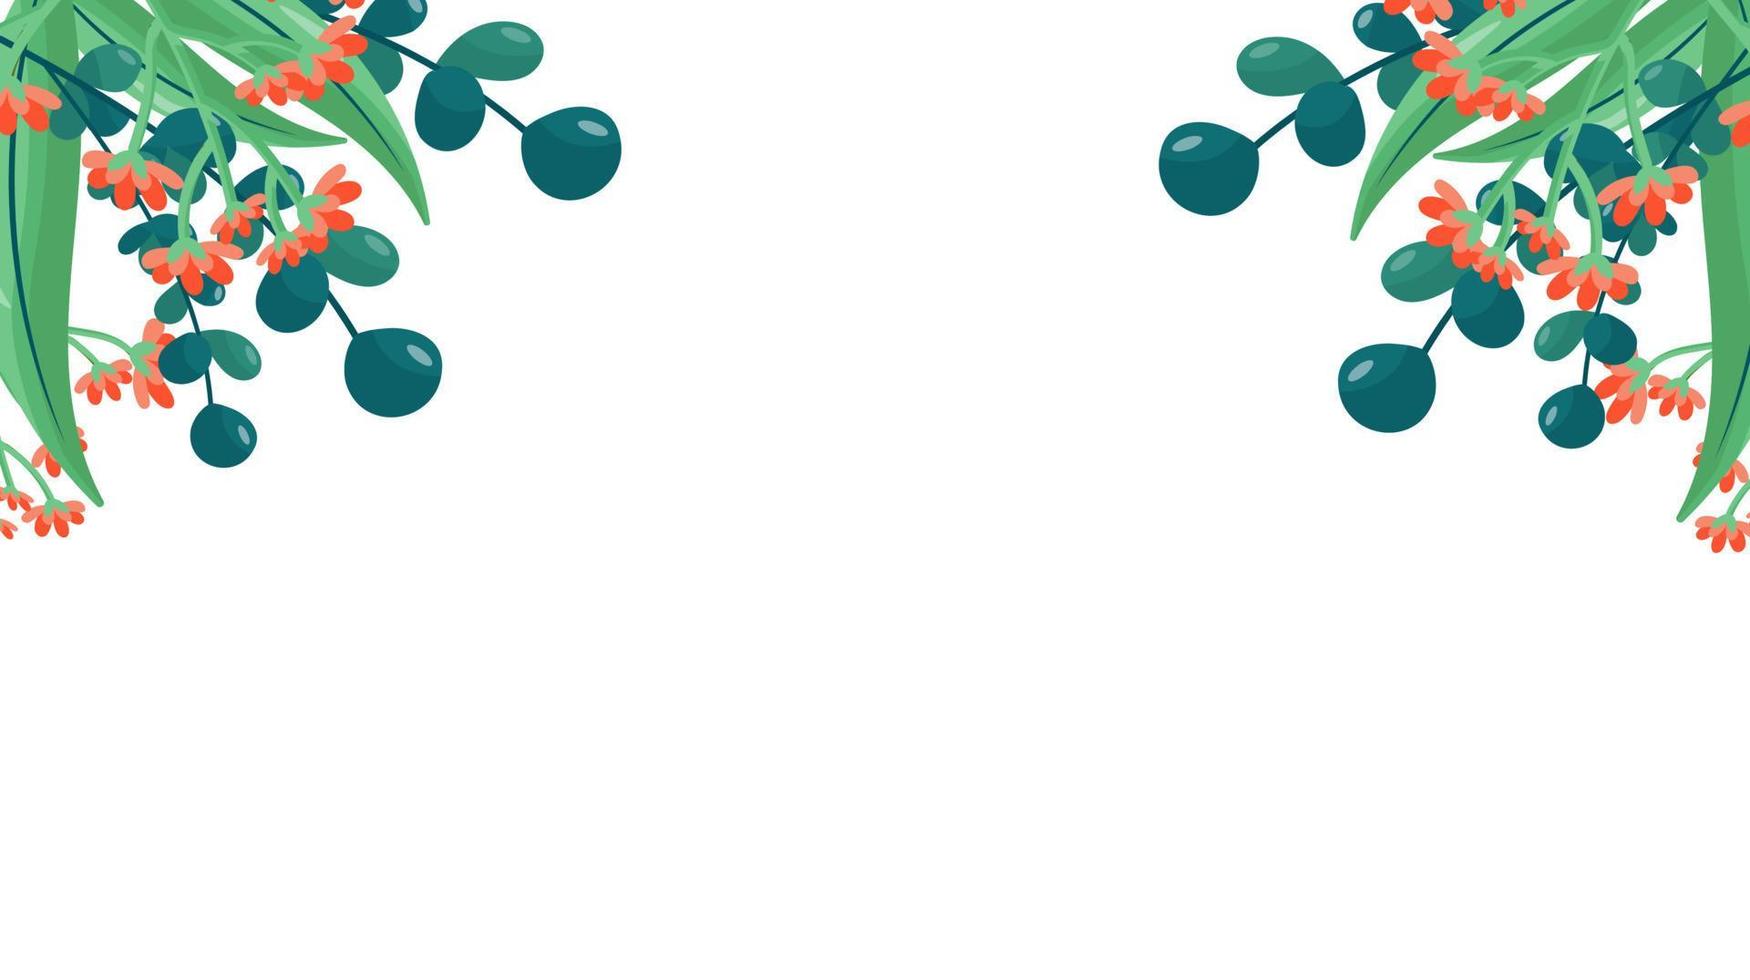 Pflanzen minimalistisches Vektorbanner. hand gezeichnete blumen, gras, zweige, blätter auf einem weißen hintergrund. grünes einfaches horizontales Muster. einfacher flacher Stil. Alle Elemente sind isoliert und editierbar vektor